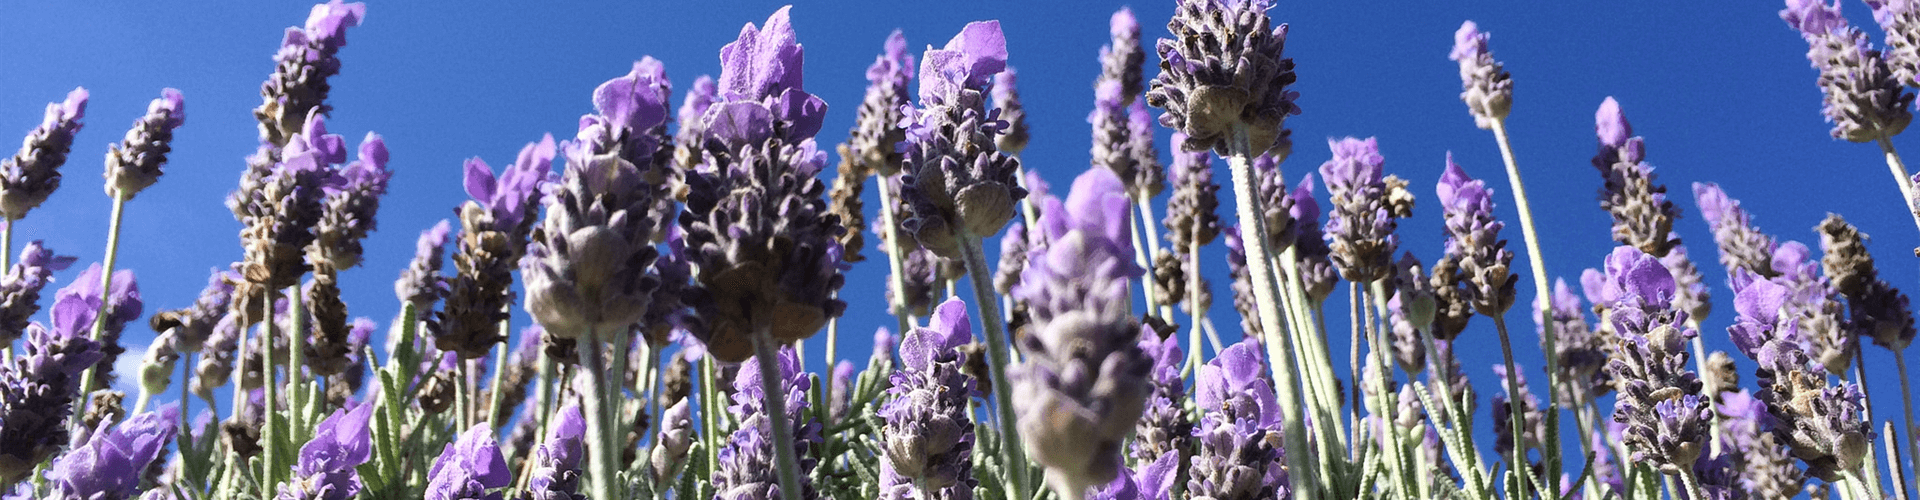 Lavendel uit de Provence